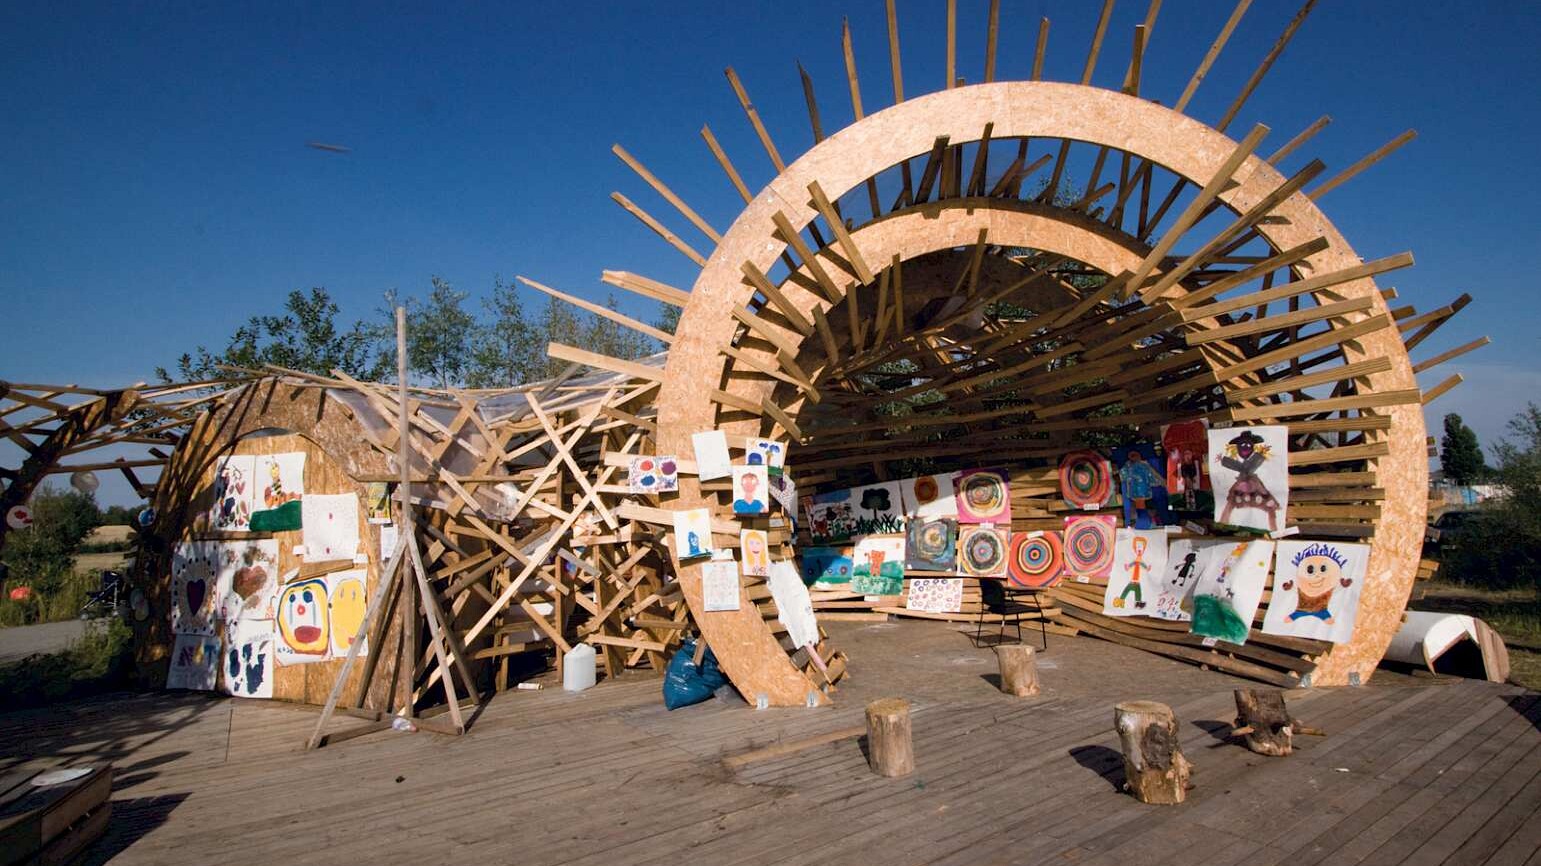 in einer runden, offenen Holzkonstruktion hängen großformatige, von Kindern gemalte Bilder